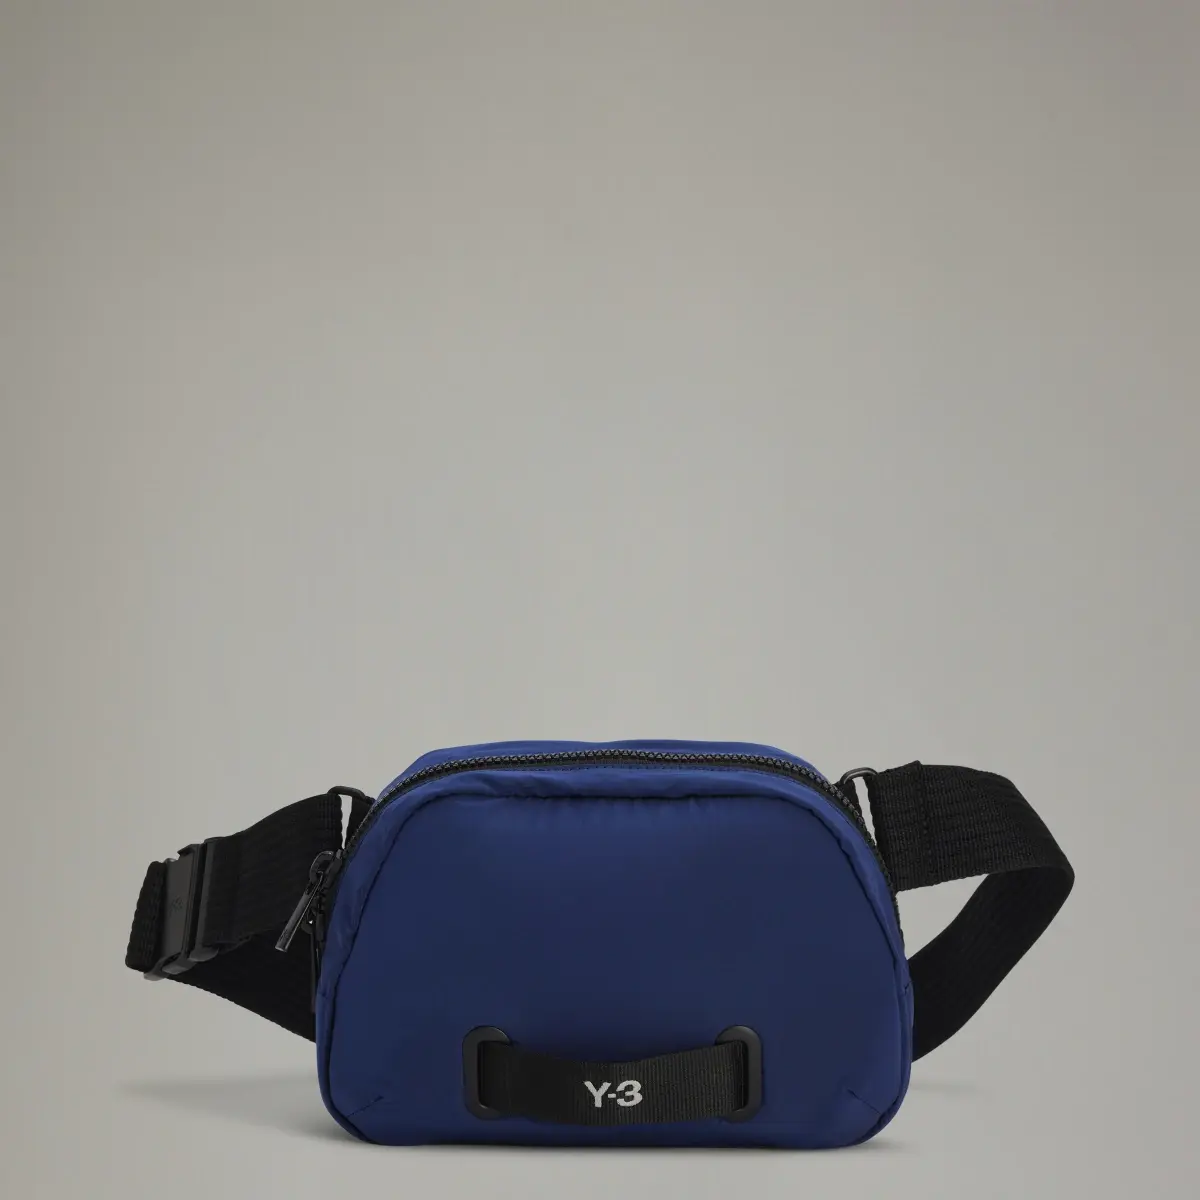 Adidas Y-3 X BODY BAG. 1